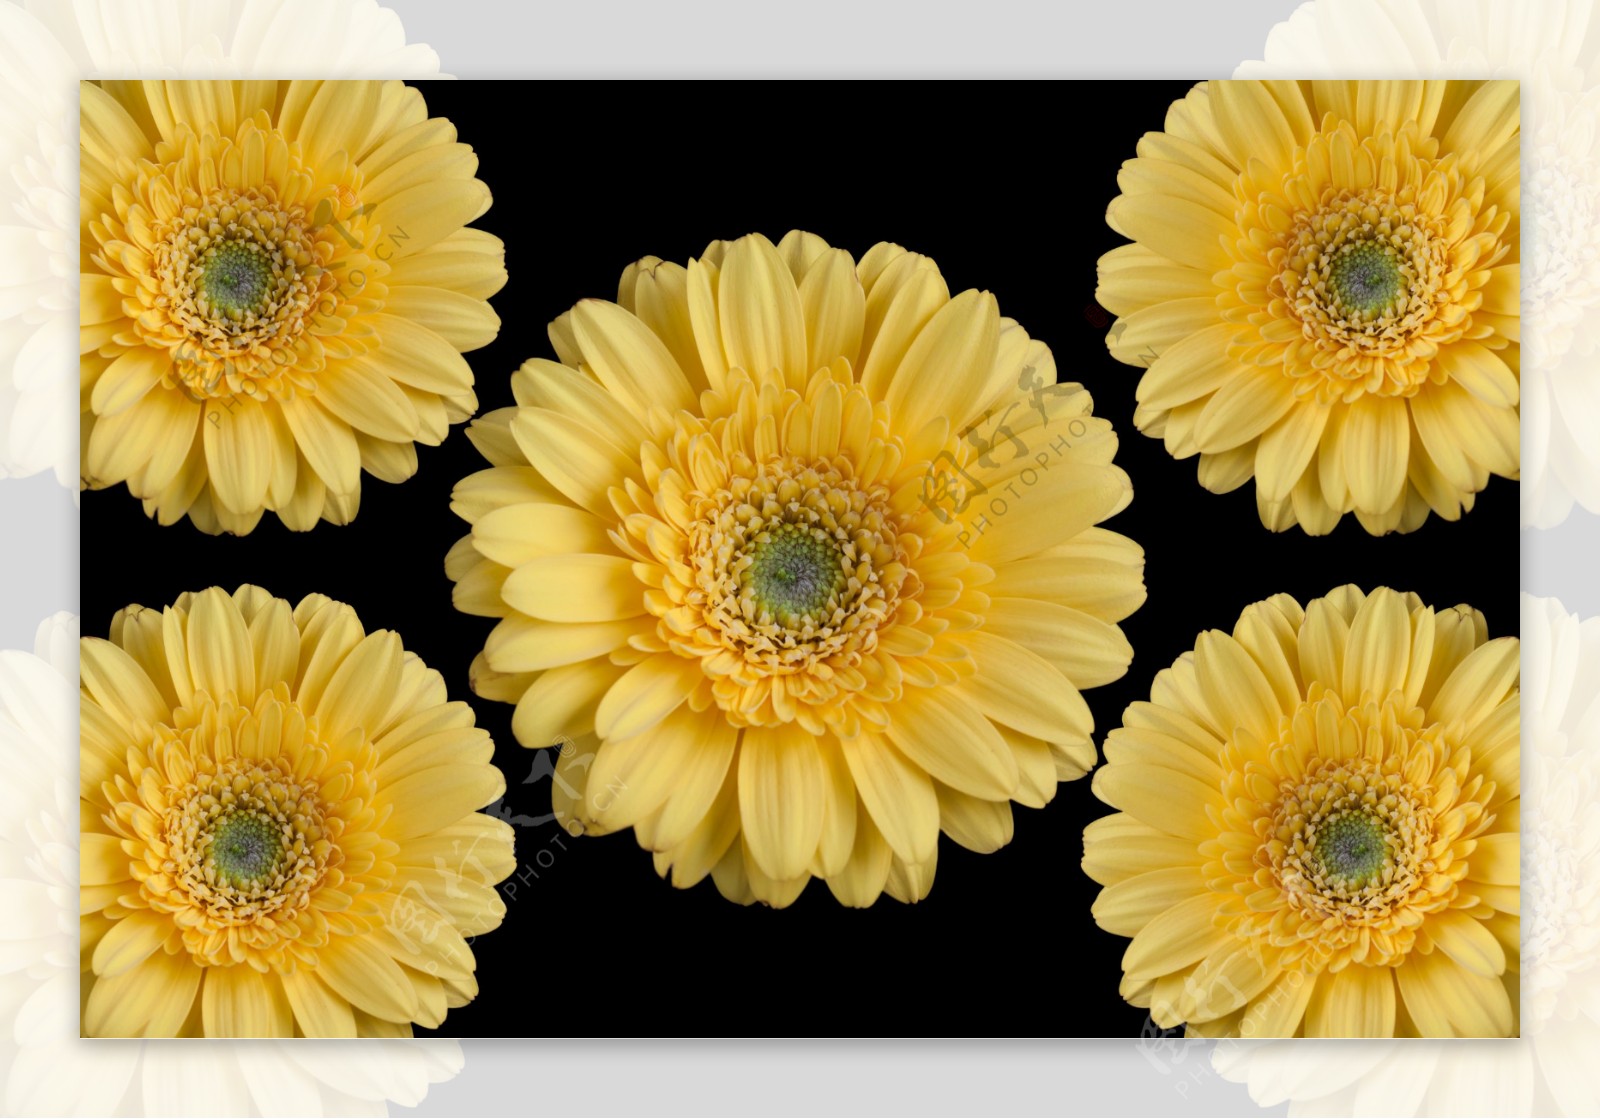 黄色菊花摄影图片